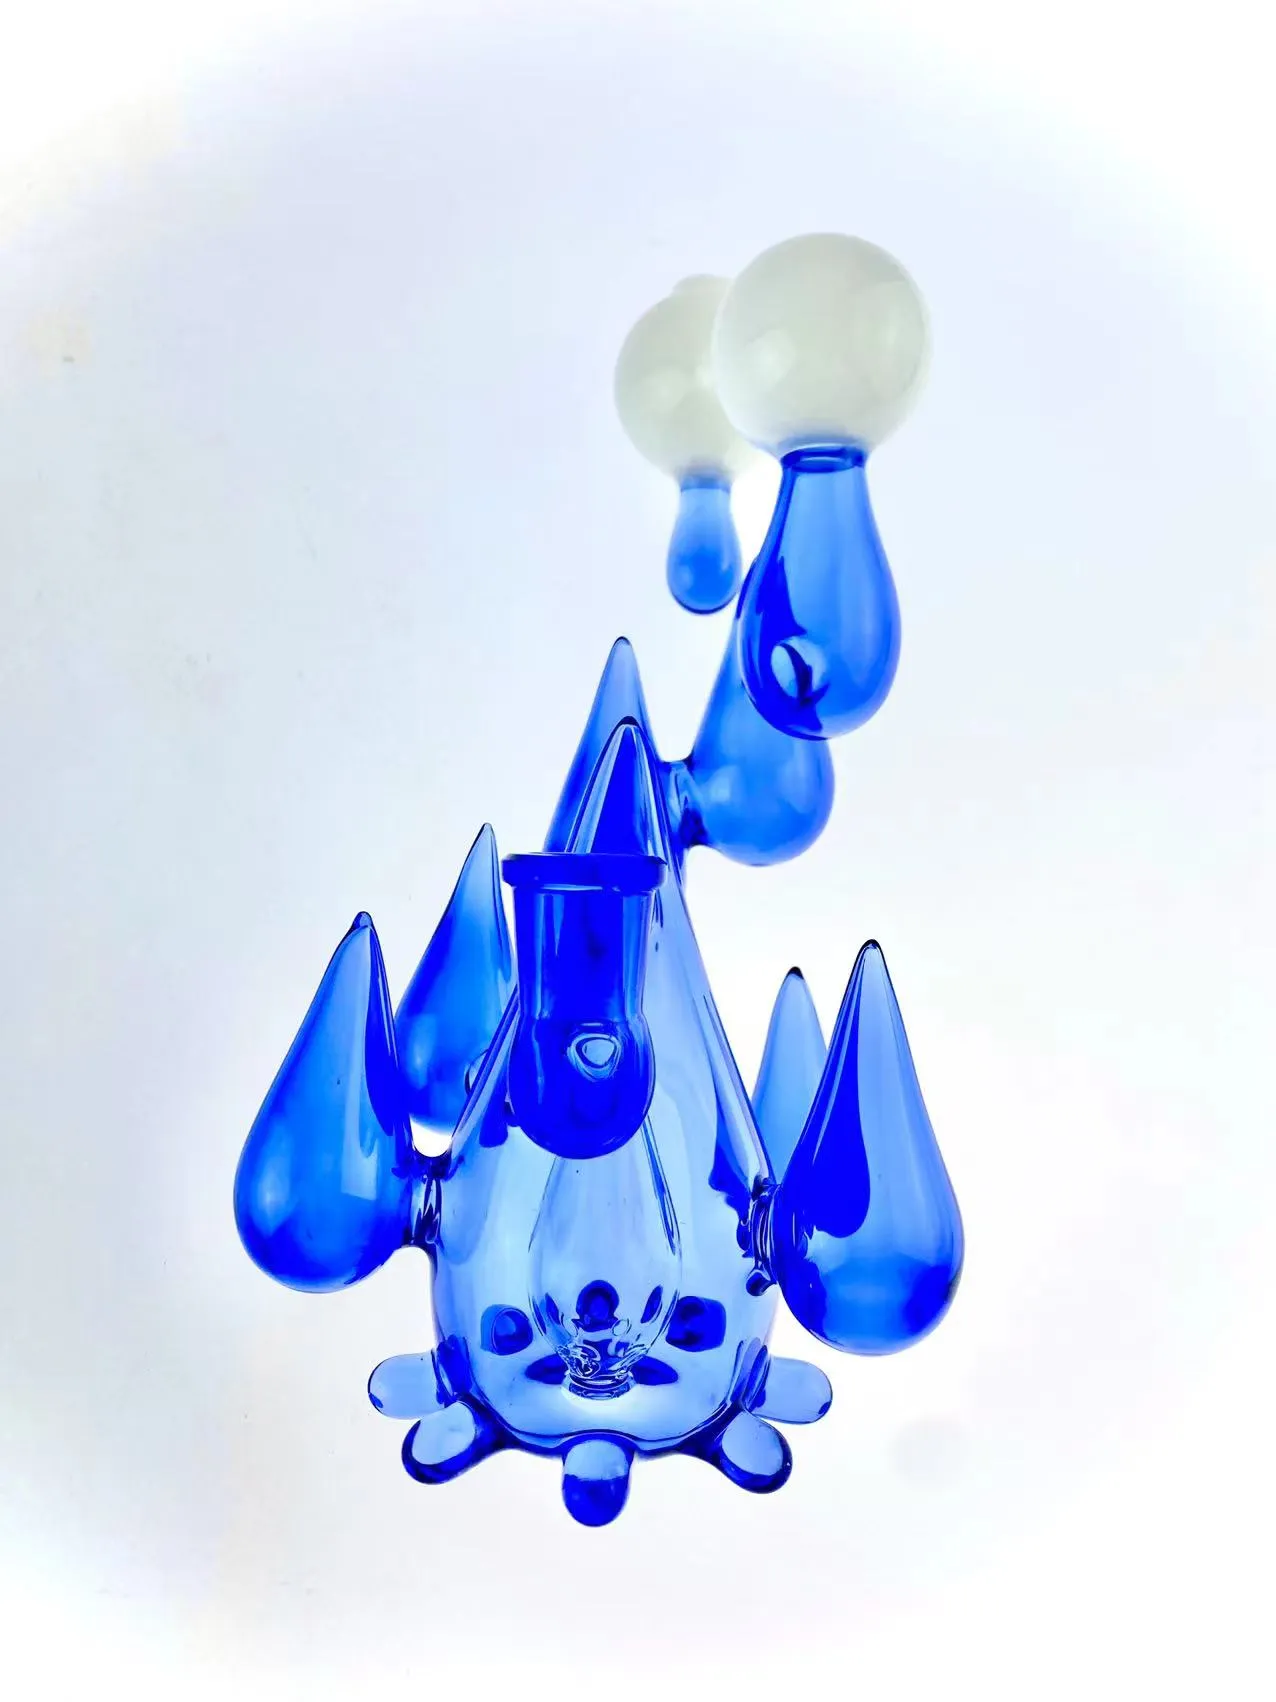 Plate-forme de type goutte de pluie, belle conception, couleur porcelaine bleu cobalt et blanc, joint de 14mm